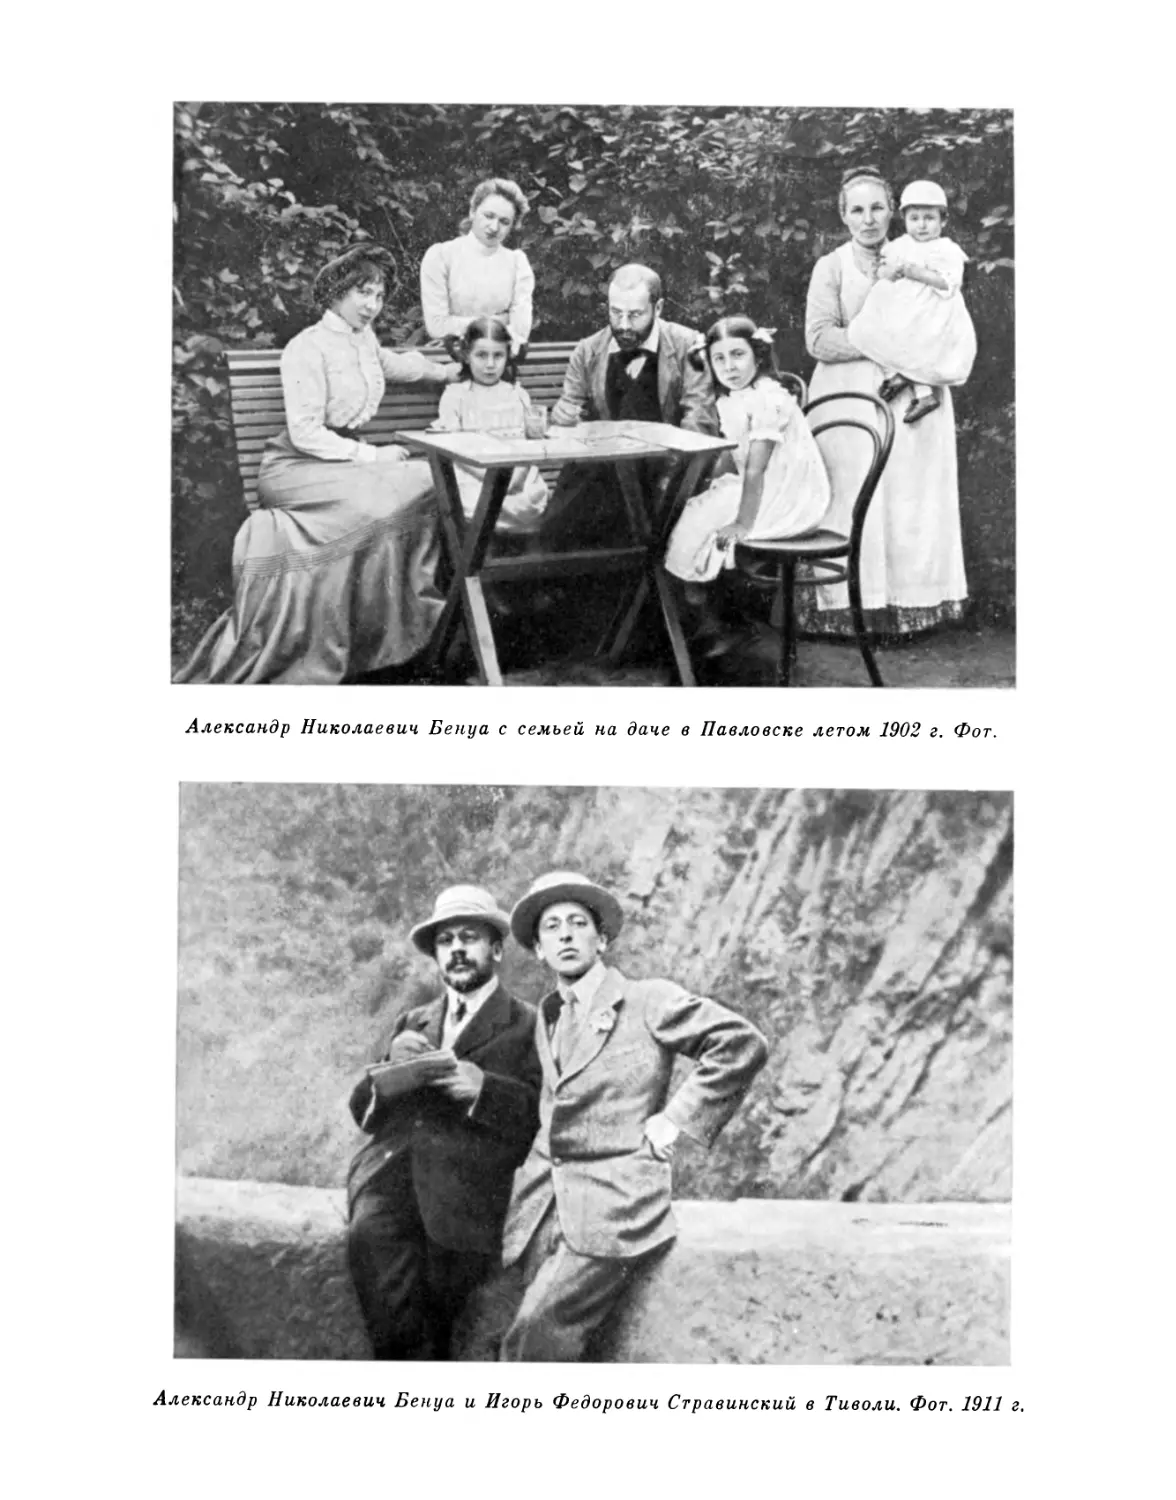 А.Н. Бенуа с семьей на даче в Павловске летом 1902 г.; А.Н. Бенуа и И.Ф.Стравинский в Тиволи. 1911 г.